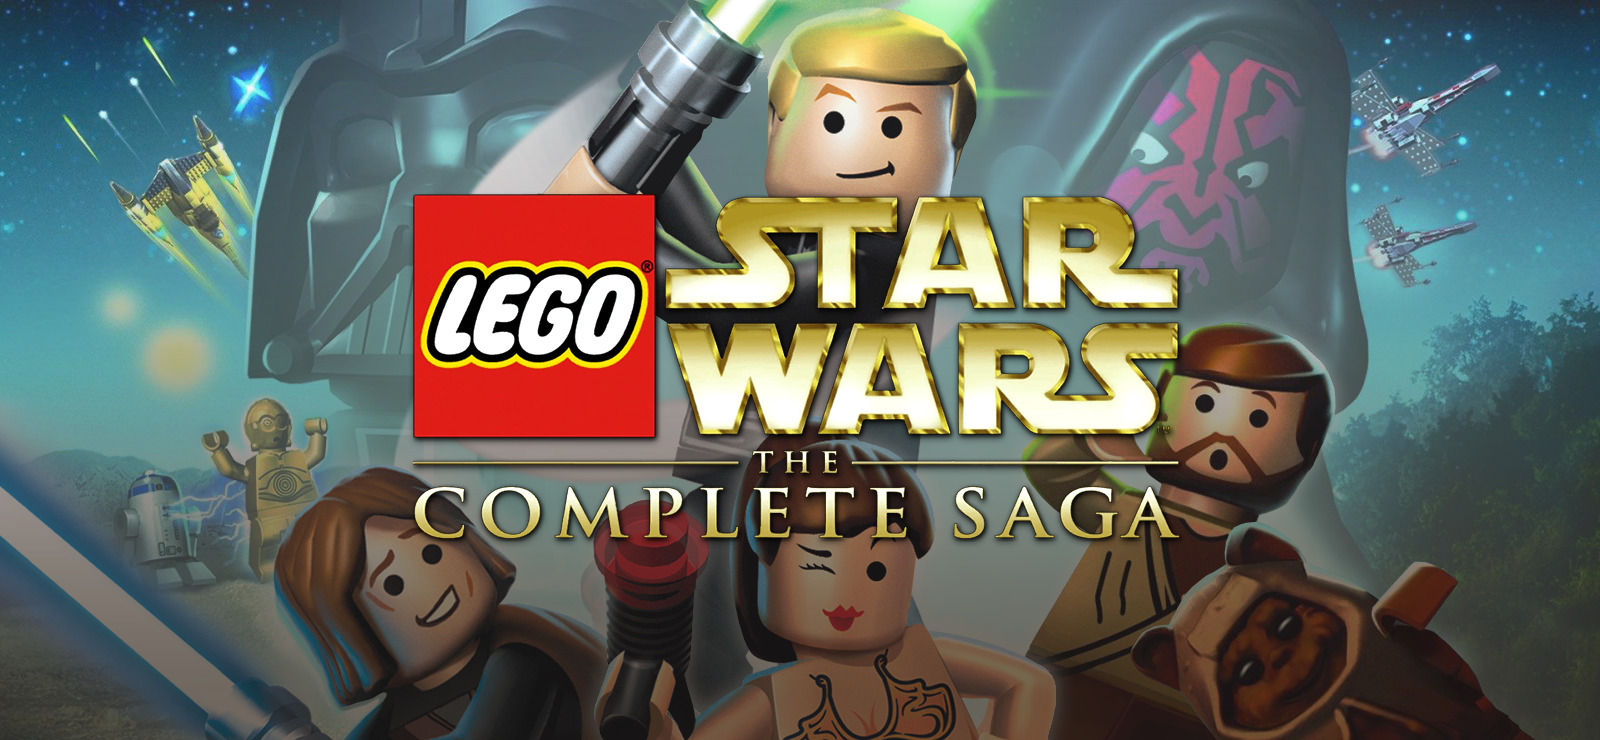 Star Wars™ - Complete Saga Free Download (v1.0) » Unlocked